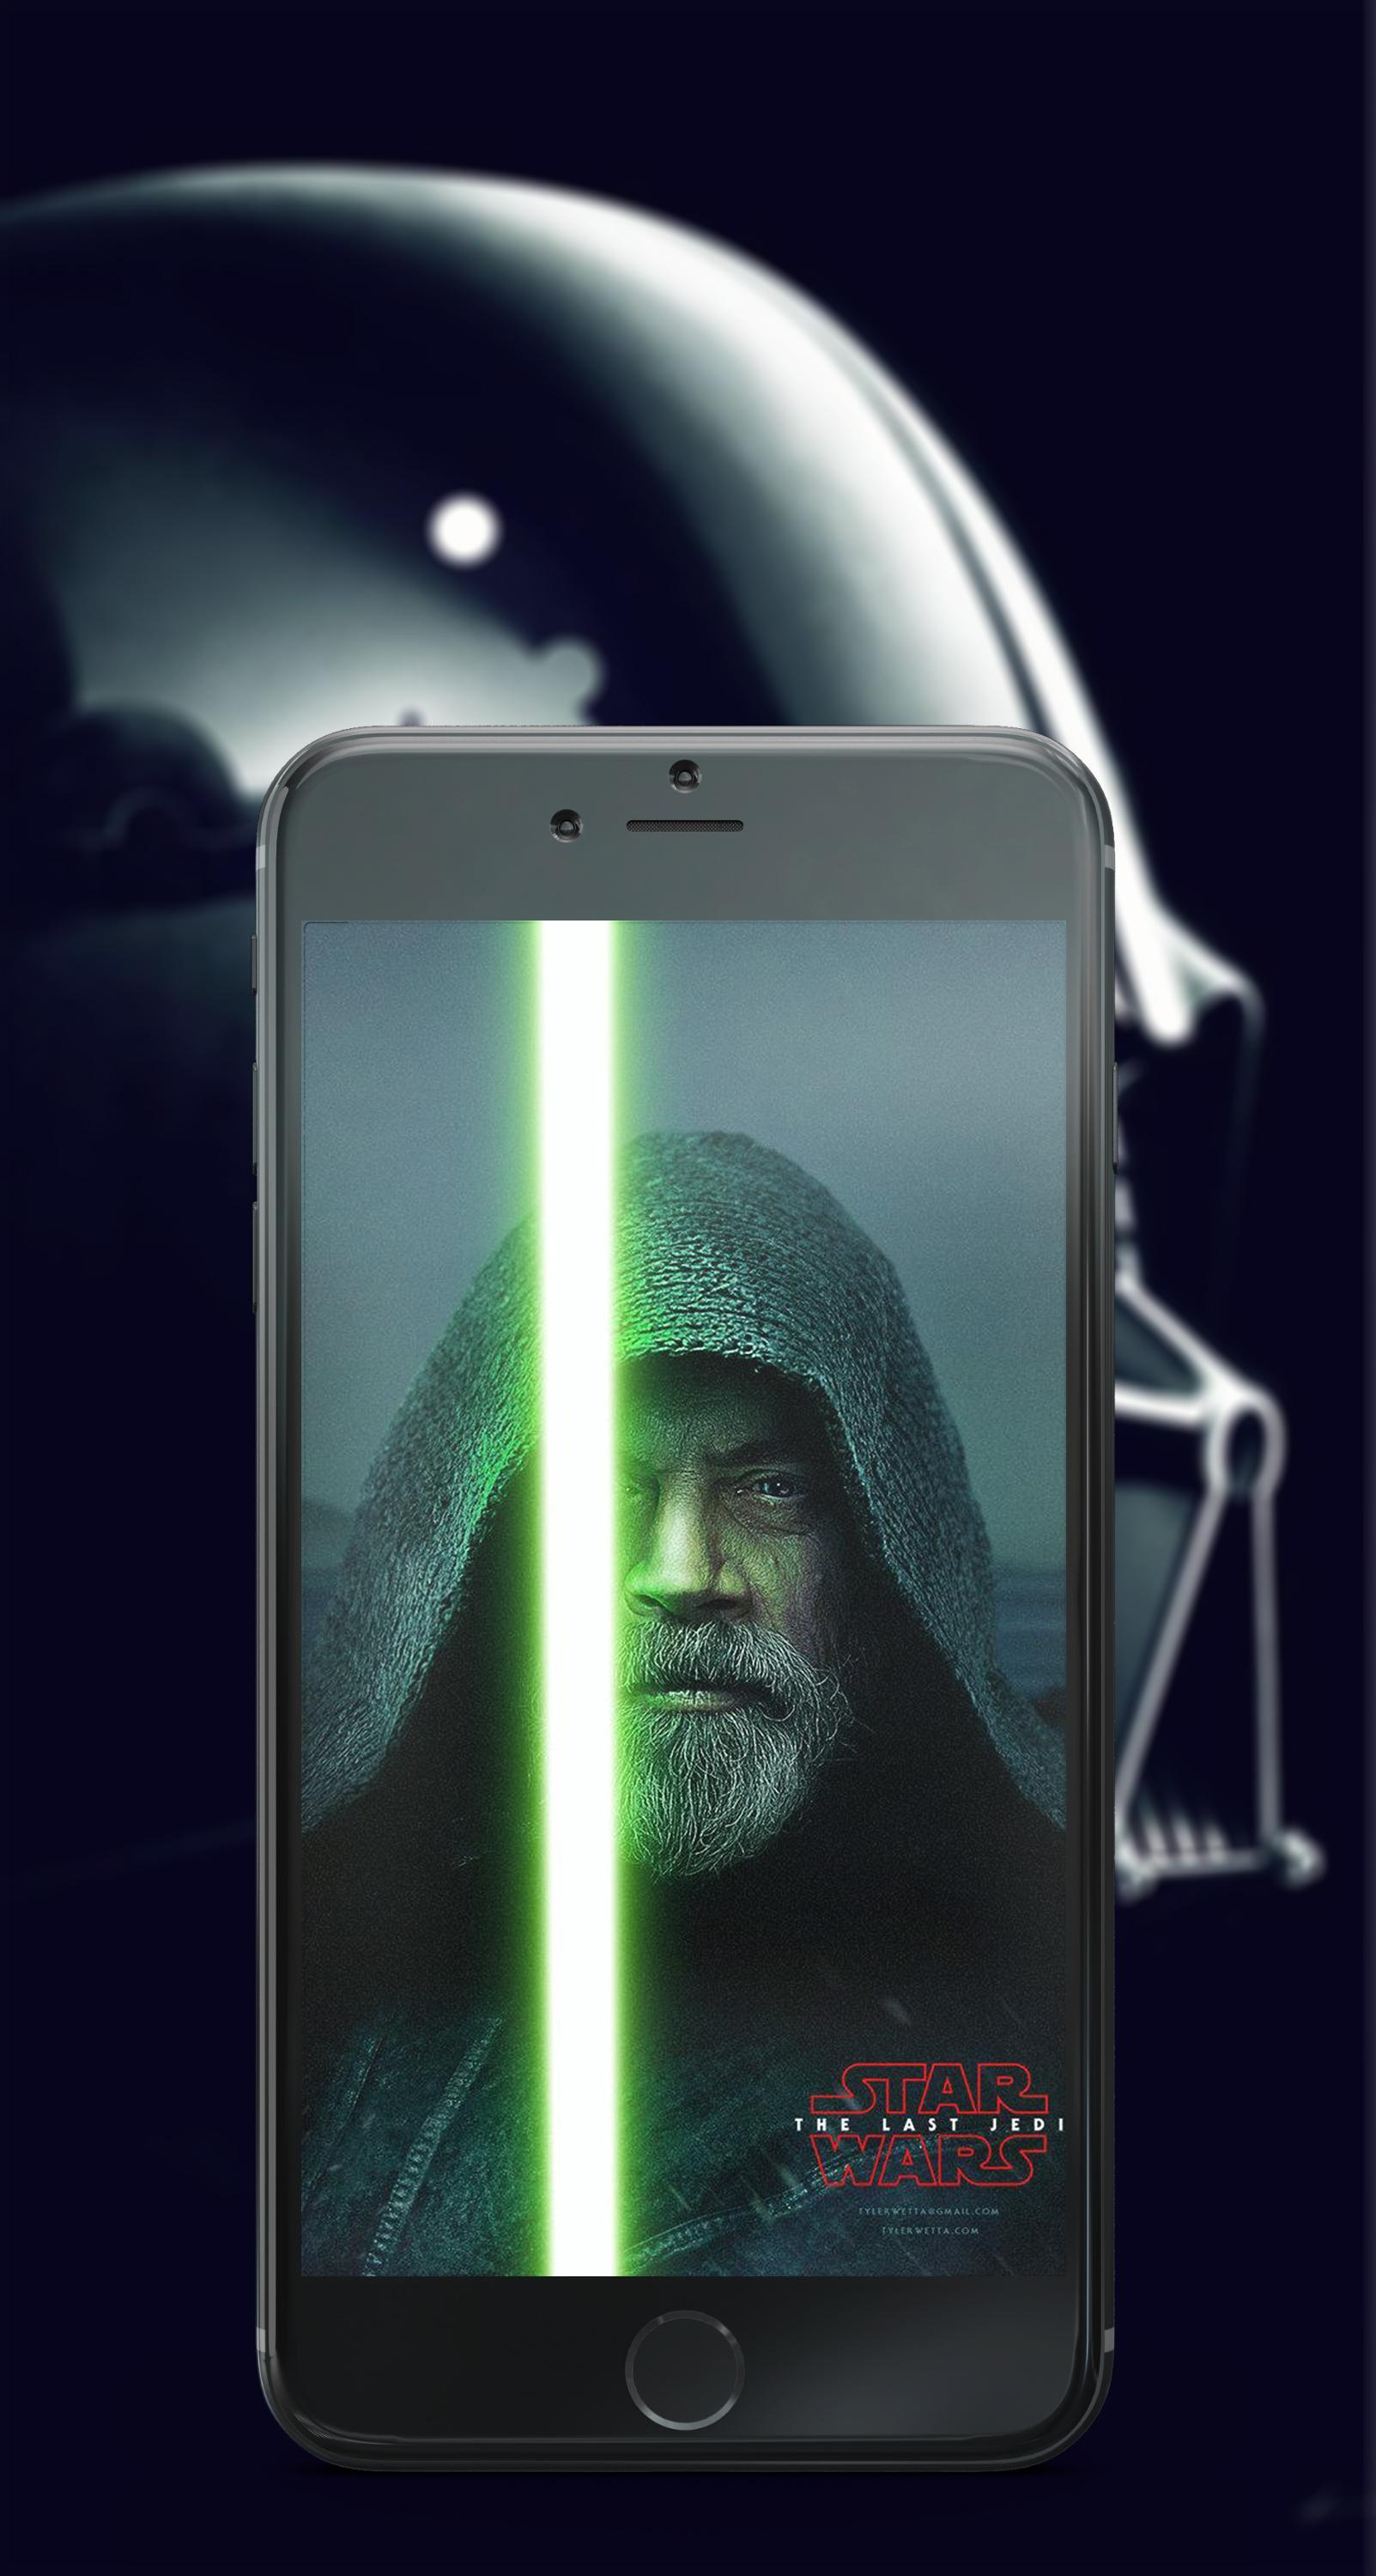 Đừng bỏ lỡ các hình nền Star Wars đẹp nhất với chất lượng 4K cho điện thoại Android của bạn. Hãy tận hưởng không gian phương tiện đa phương tiện tuyệt vời đó với hình ảnh về các nhân vật yêu thích của bạn và thế giới điện ảnh lôi cuốn. Bấm vào hình ảnh để tải về ngay bây giờ!